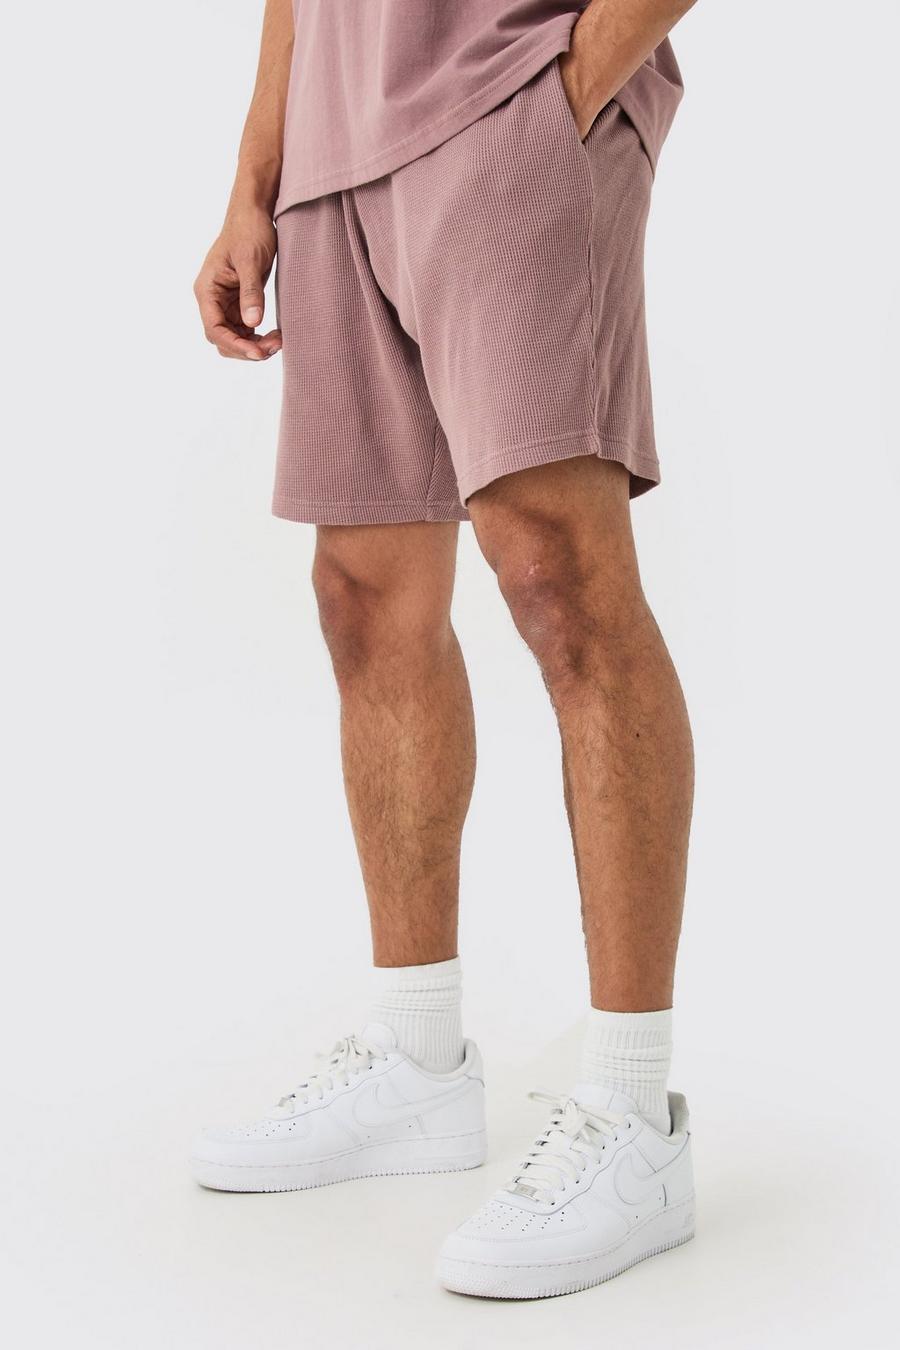 Mauve Mellanlånga shorts med våfflad struktur